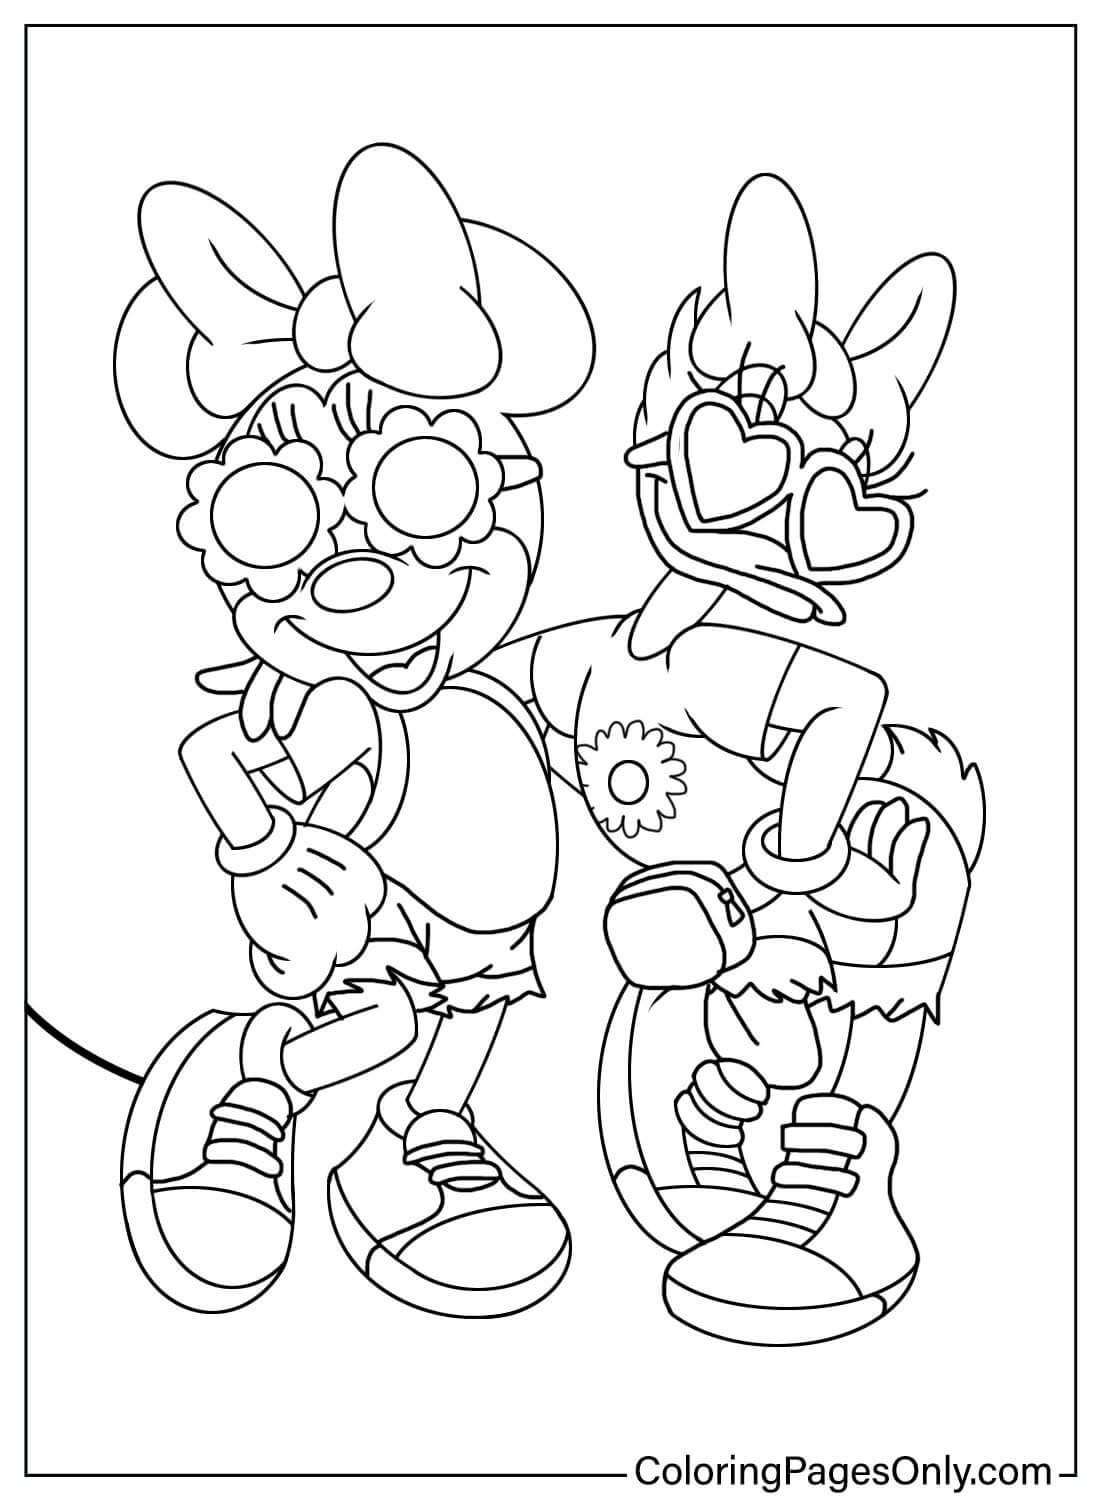 Minnie Mouse e Paperina da colorare Pagina di Paperina